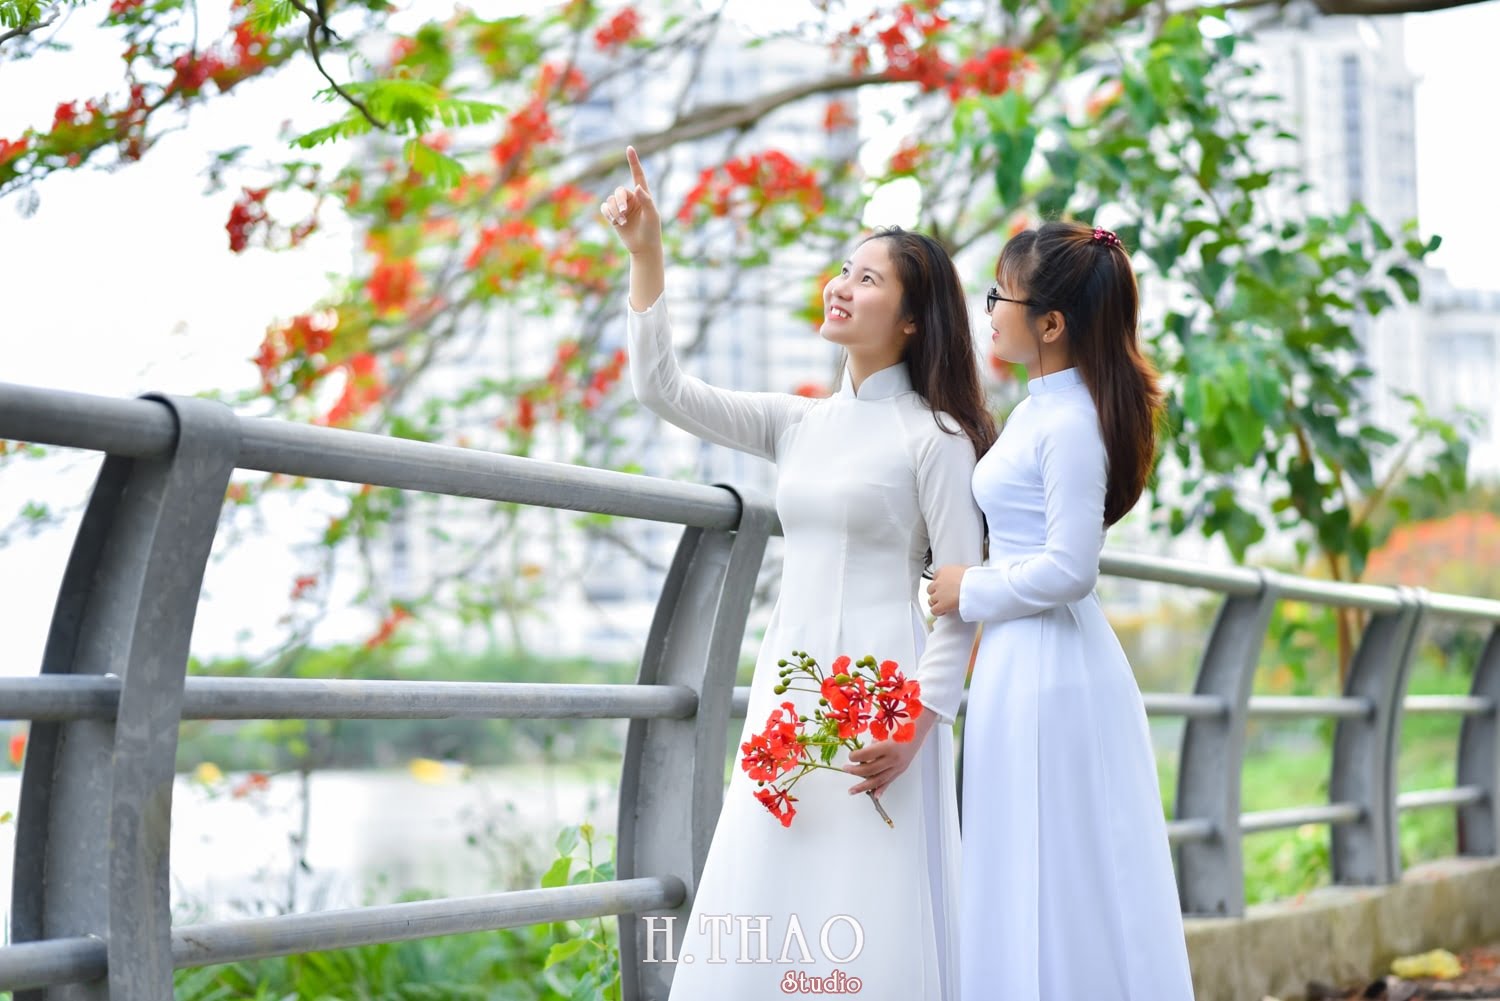 Anh ao dai hoa phuong 14 min - Bộ hình nữ sinh chụp với hoa phượng ở Sài Gòn tuyệt đẹp – HThao Studio